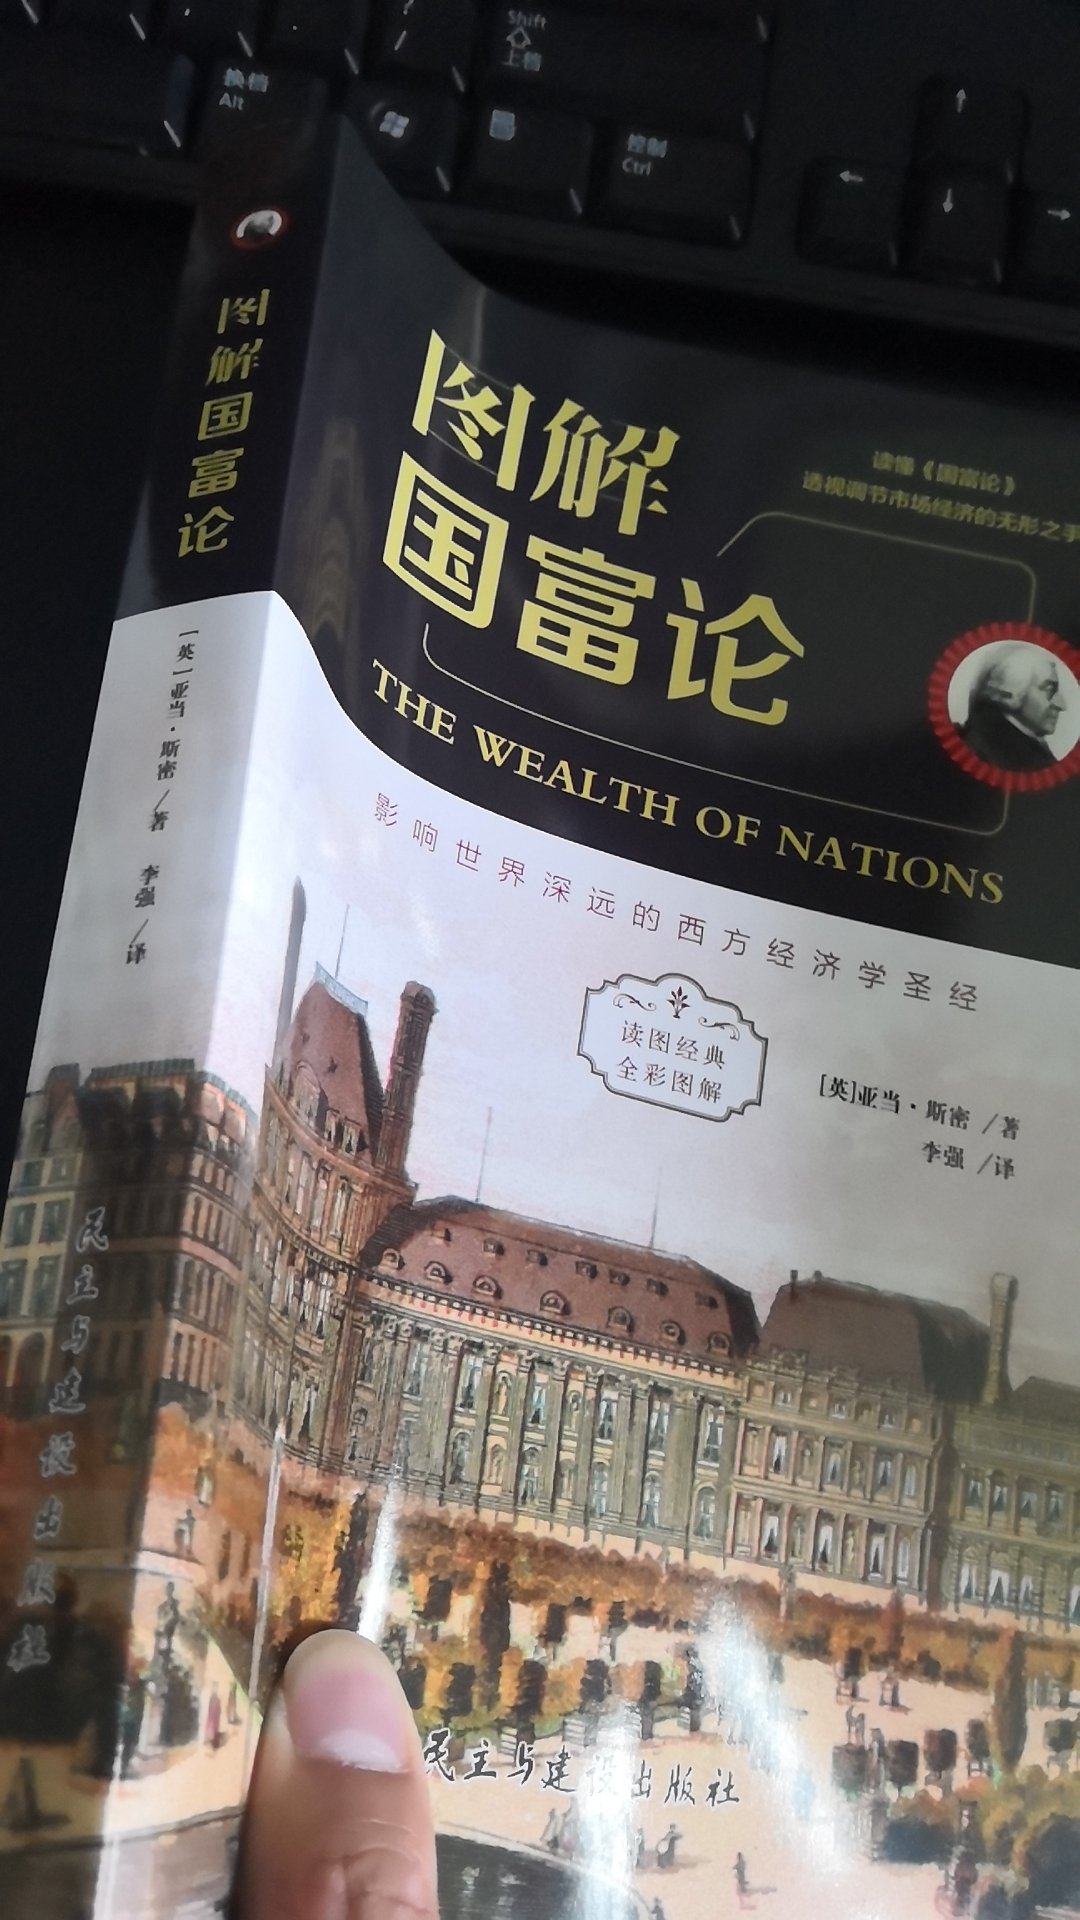 很好的一本书，亚当斯密很多年前写的，但是很多中国人只是听说过这个书，并没有真正的看过，中国人真应该好好学学这本书